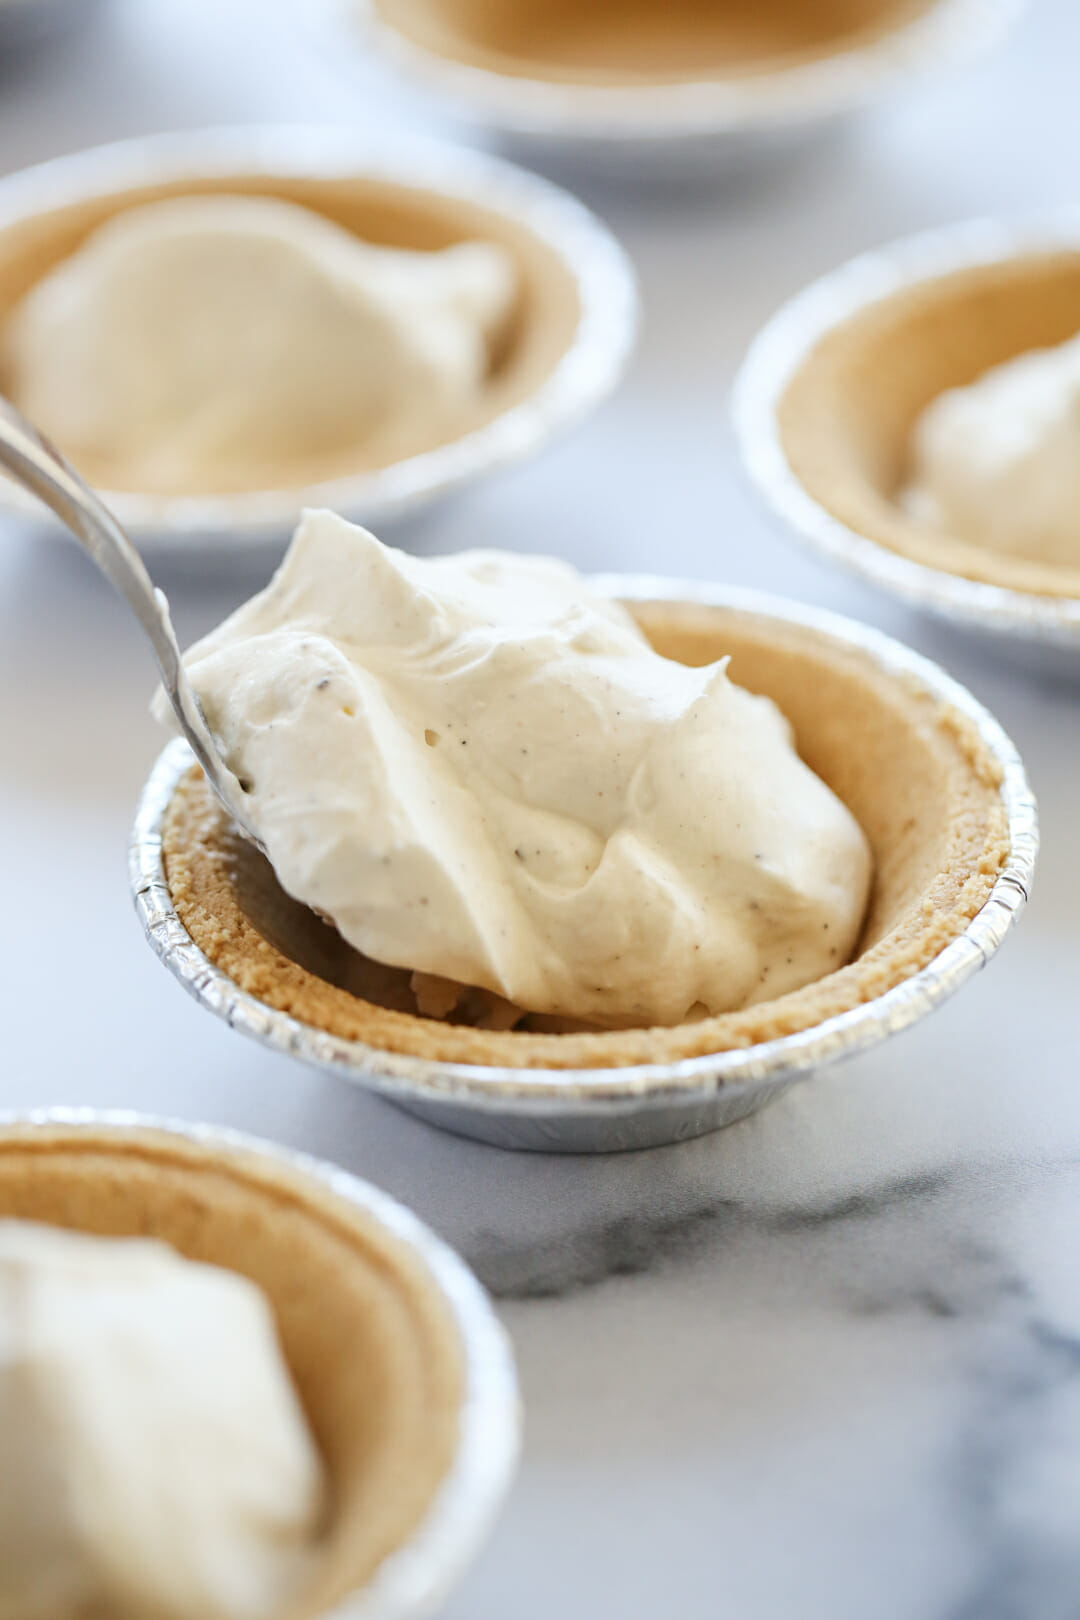 Cream Filling in Pies